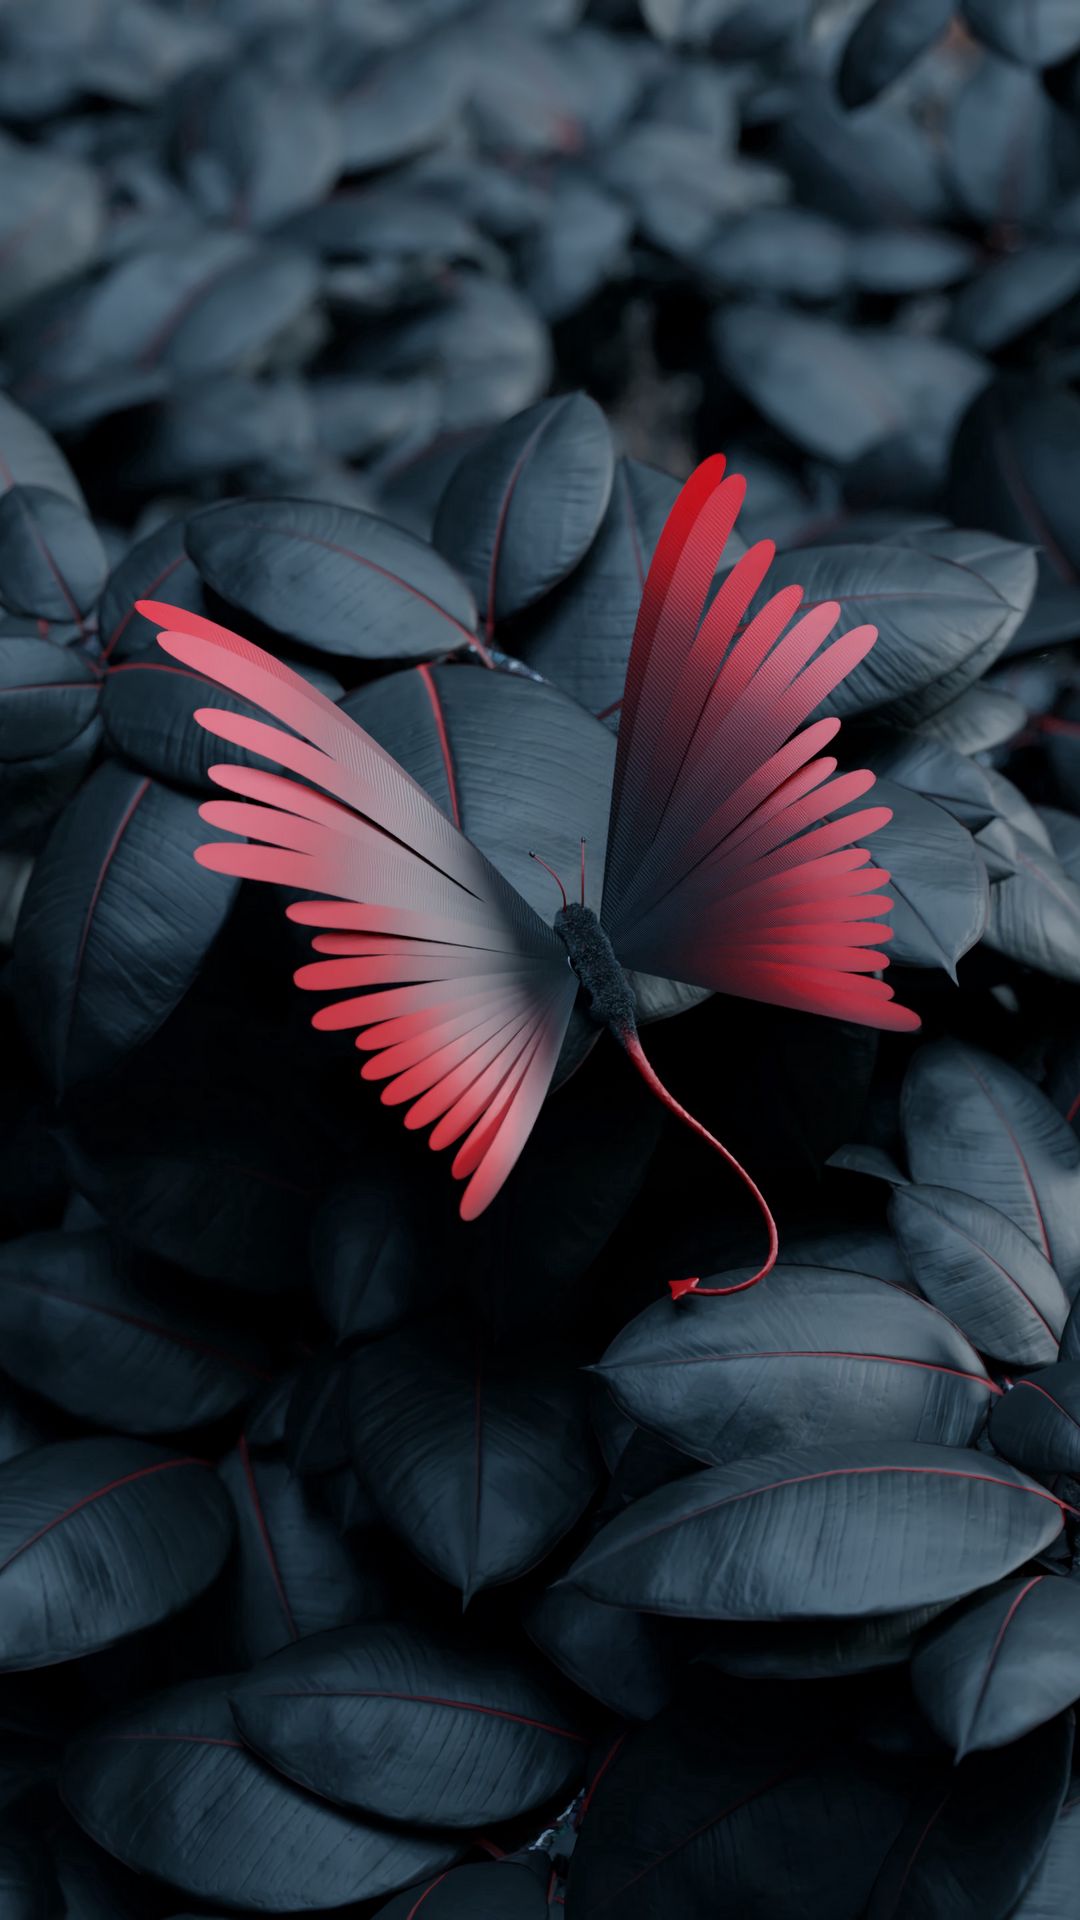 Butterfly: Con bướm được coi là biểu tượng của sự nở rộ, tính chất điềm tĩnh và sức sống mãnh liệt. Hình ảnh những chú bướm đang bay lượn giữa hoa rực rỡ sẽ mang lại cảm giác thư thái và hạnh phúc cho bạn.